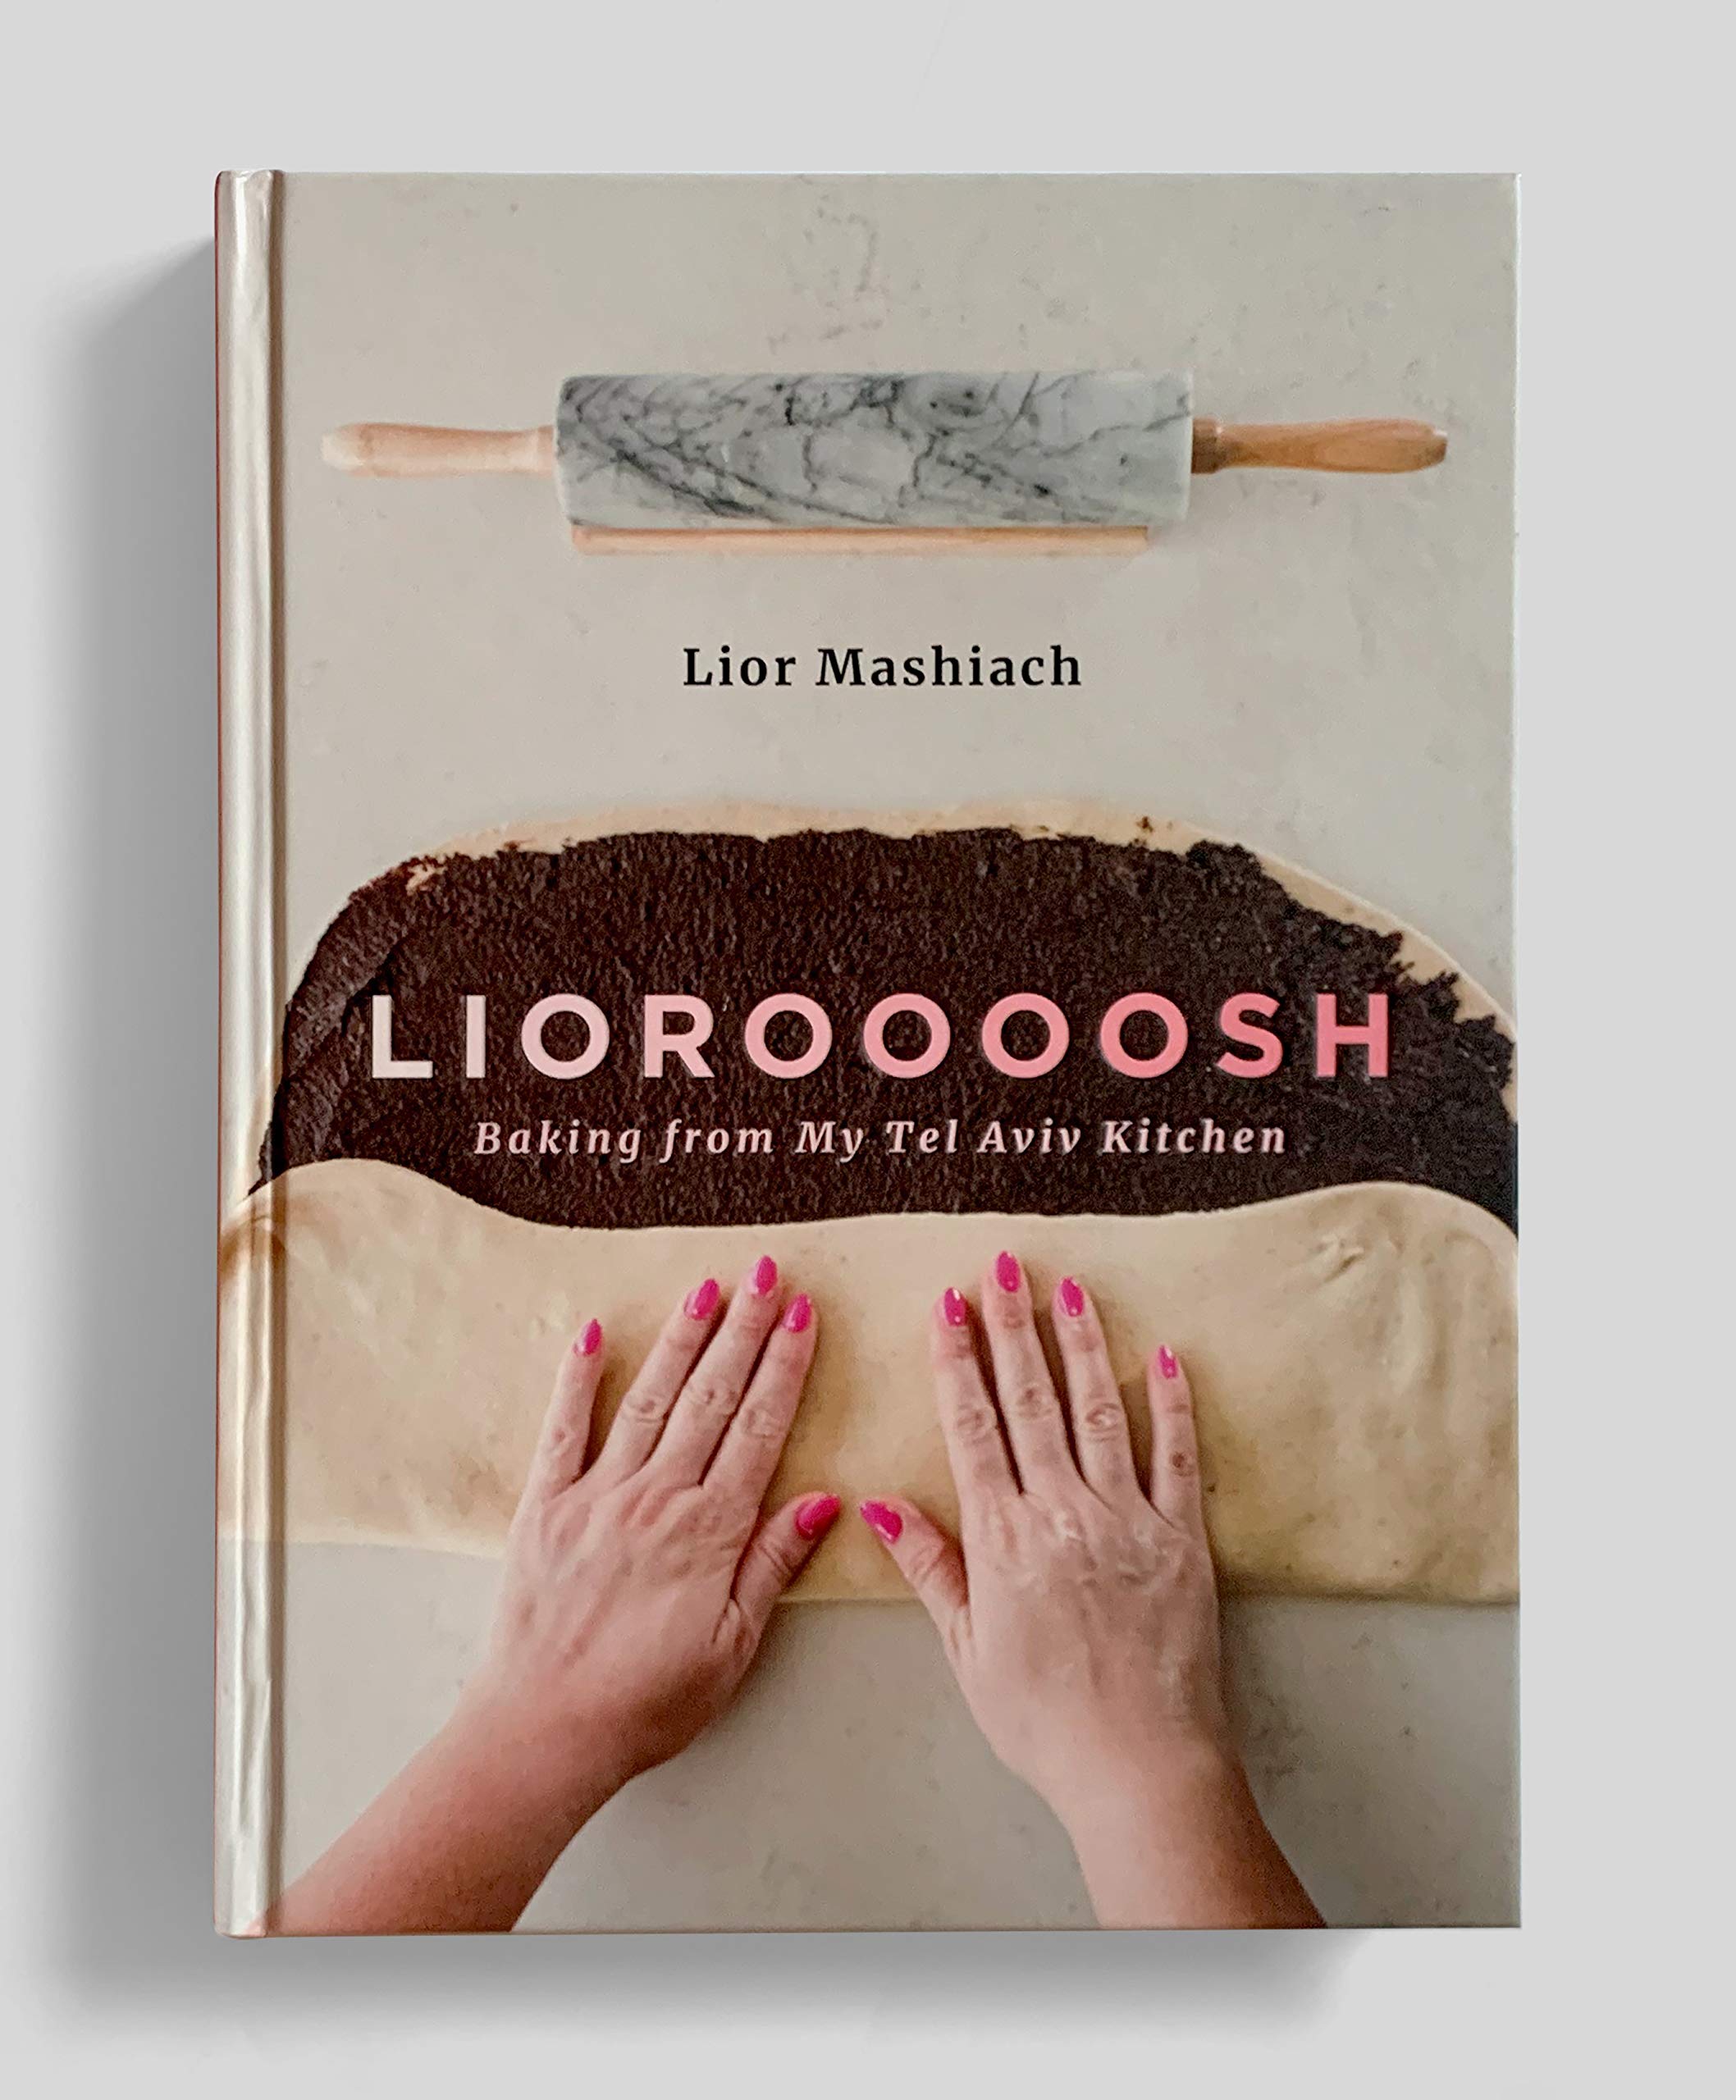 Lioroooosh: Baking from my Tel Aviv Kitchen (Lior Mashiach)